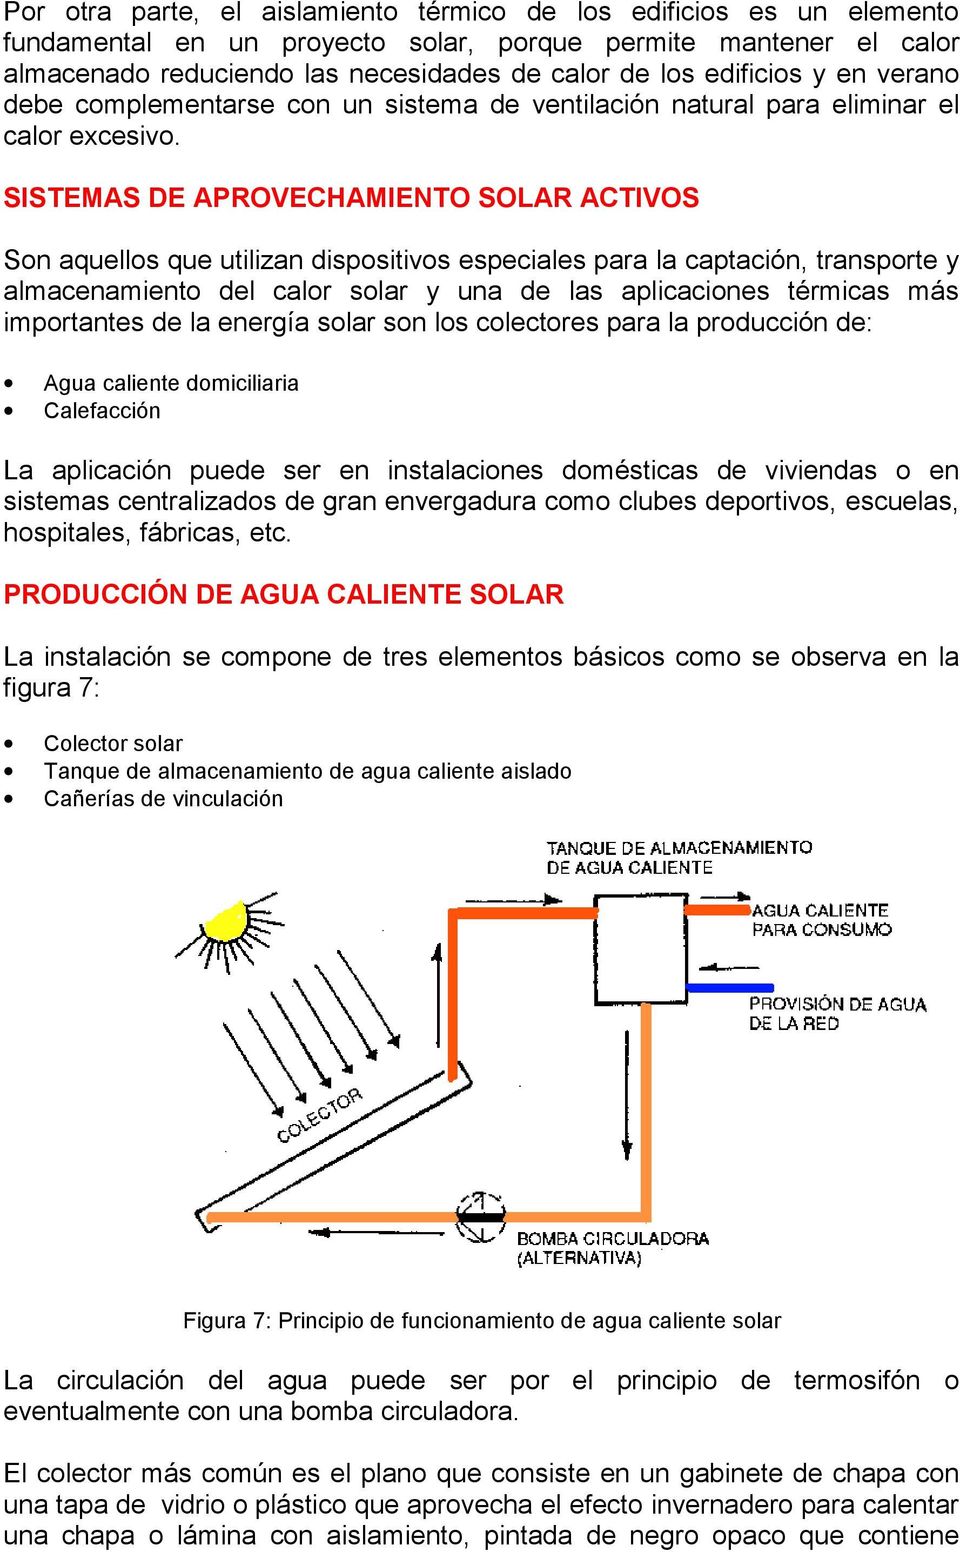 SISTEMAS DE APROVECHAMIENTO SOLAR ACTIVOS Son aquellos que utilizan dispositivos especiales para la captación, transporte y almacenamiento del calor solar y una de las aplicaciones térmicas más